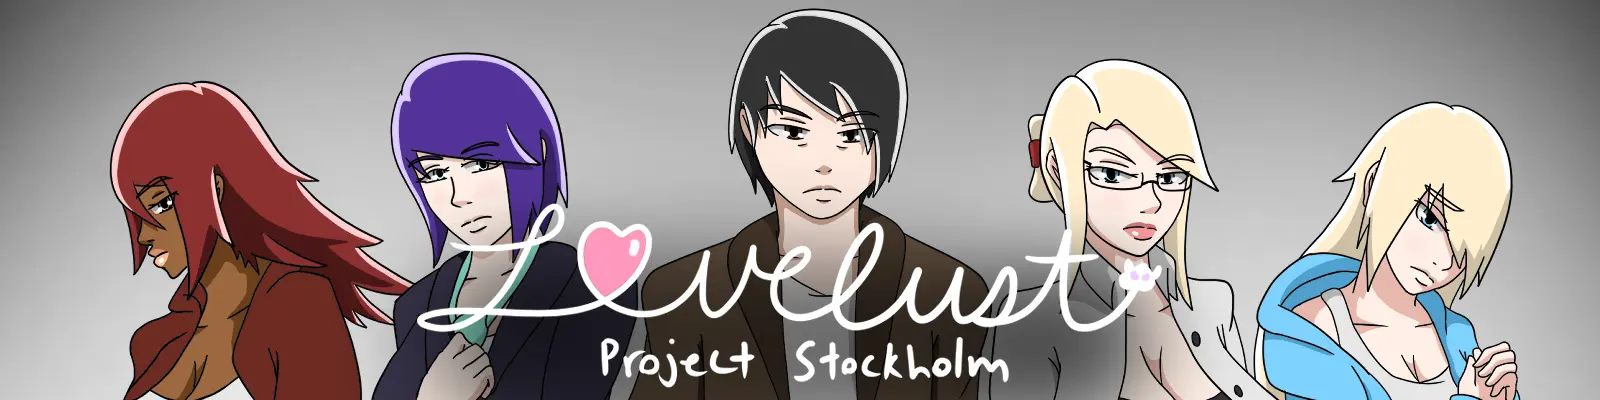 Lovelust: Project Stockholm [v0.29] main image